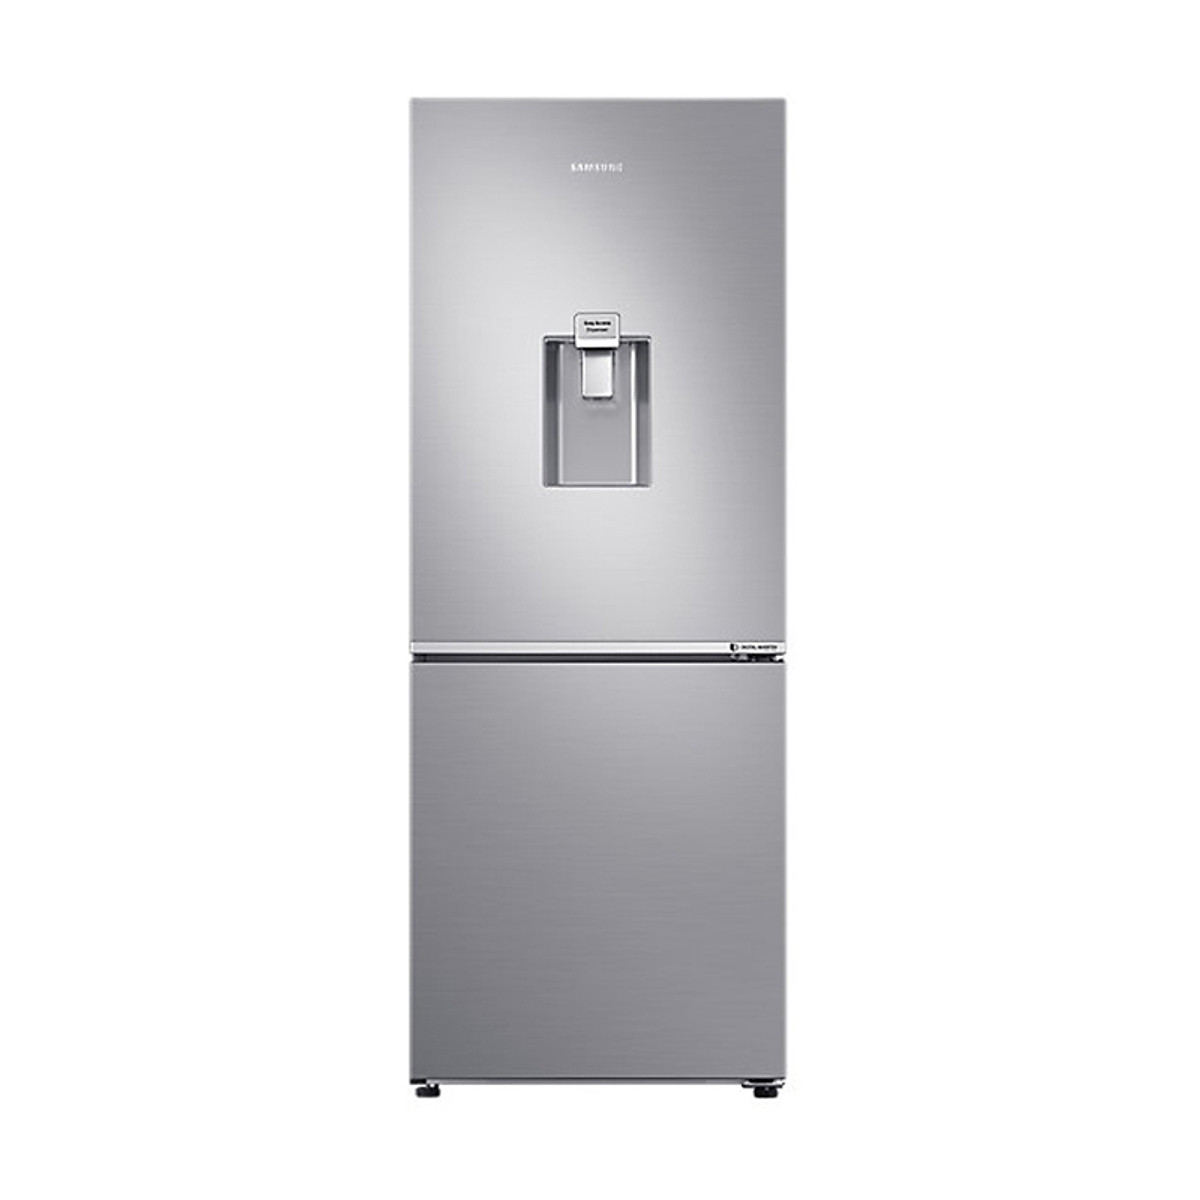 Tủ lạnh Samsung Inverter 276 lít RB27N4170S8/SV 